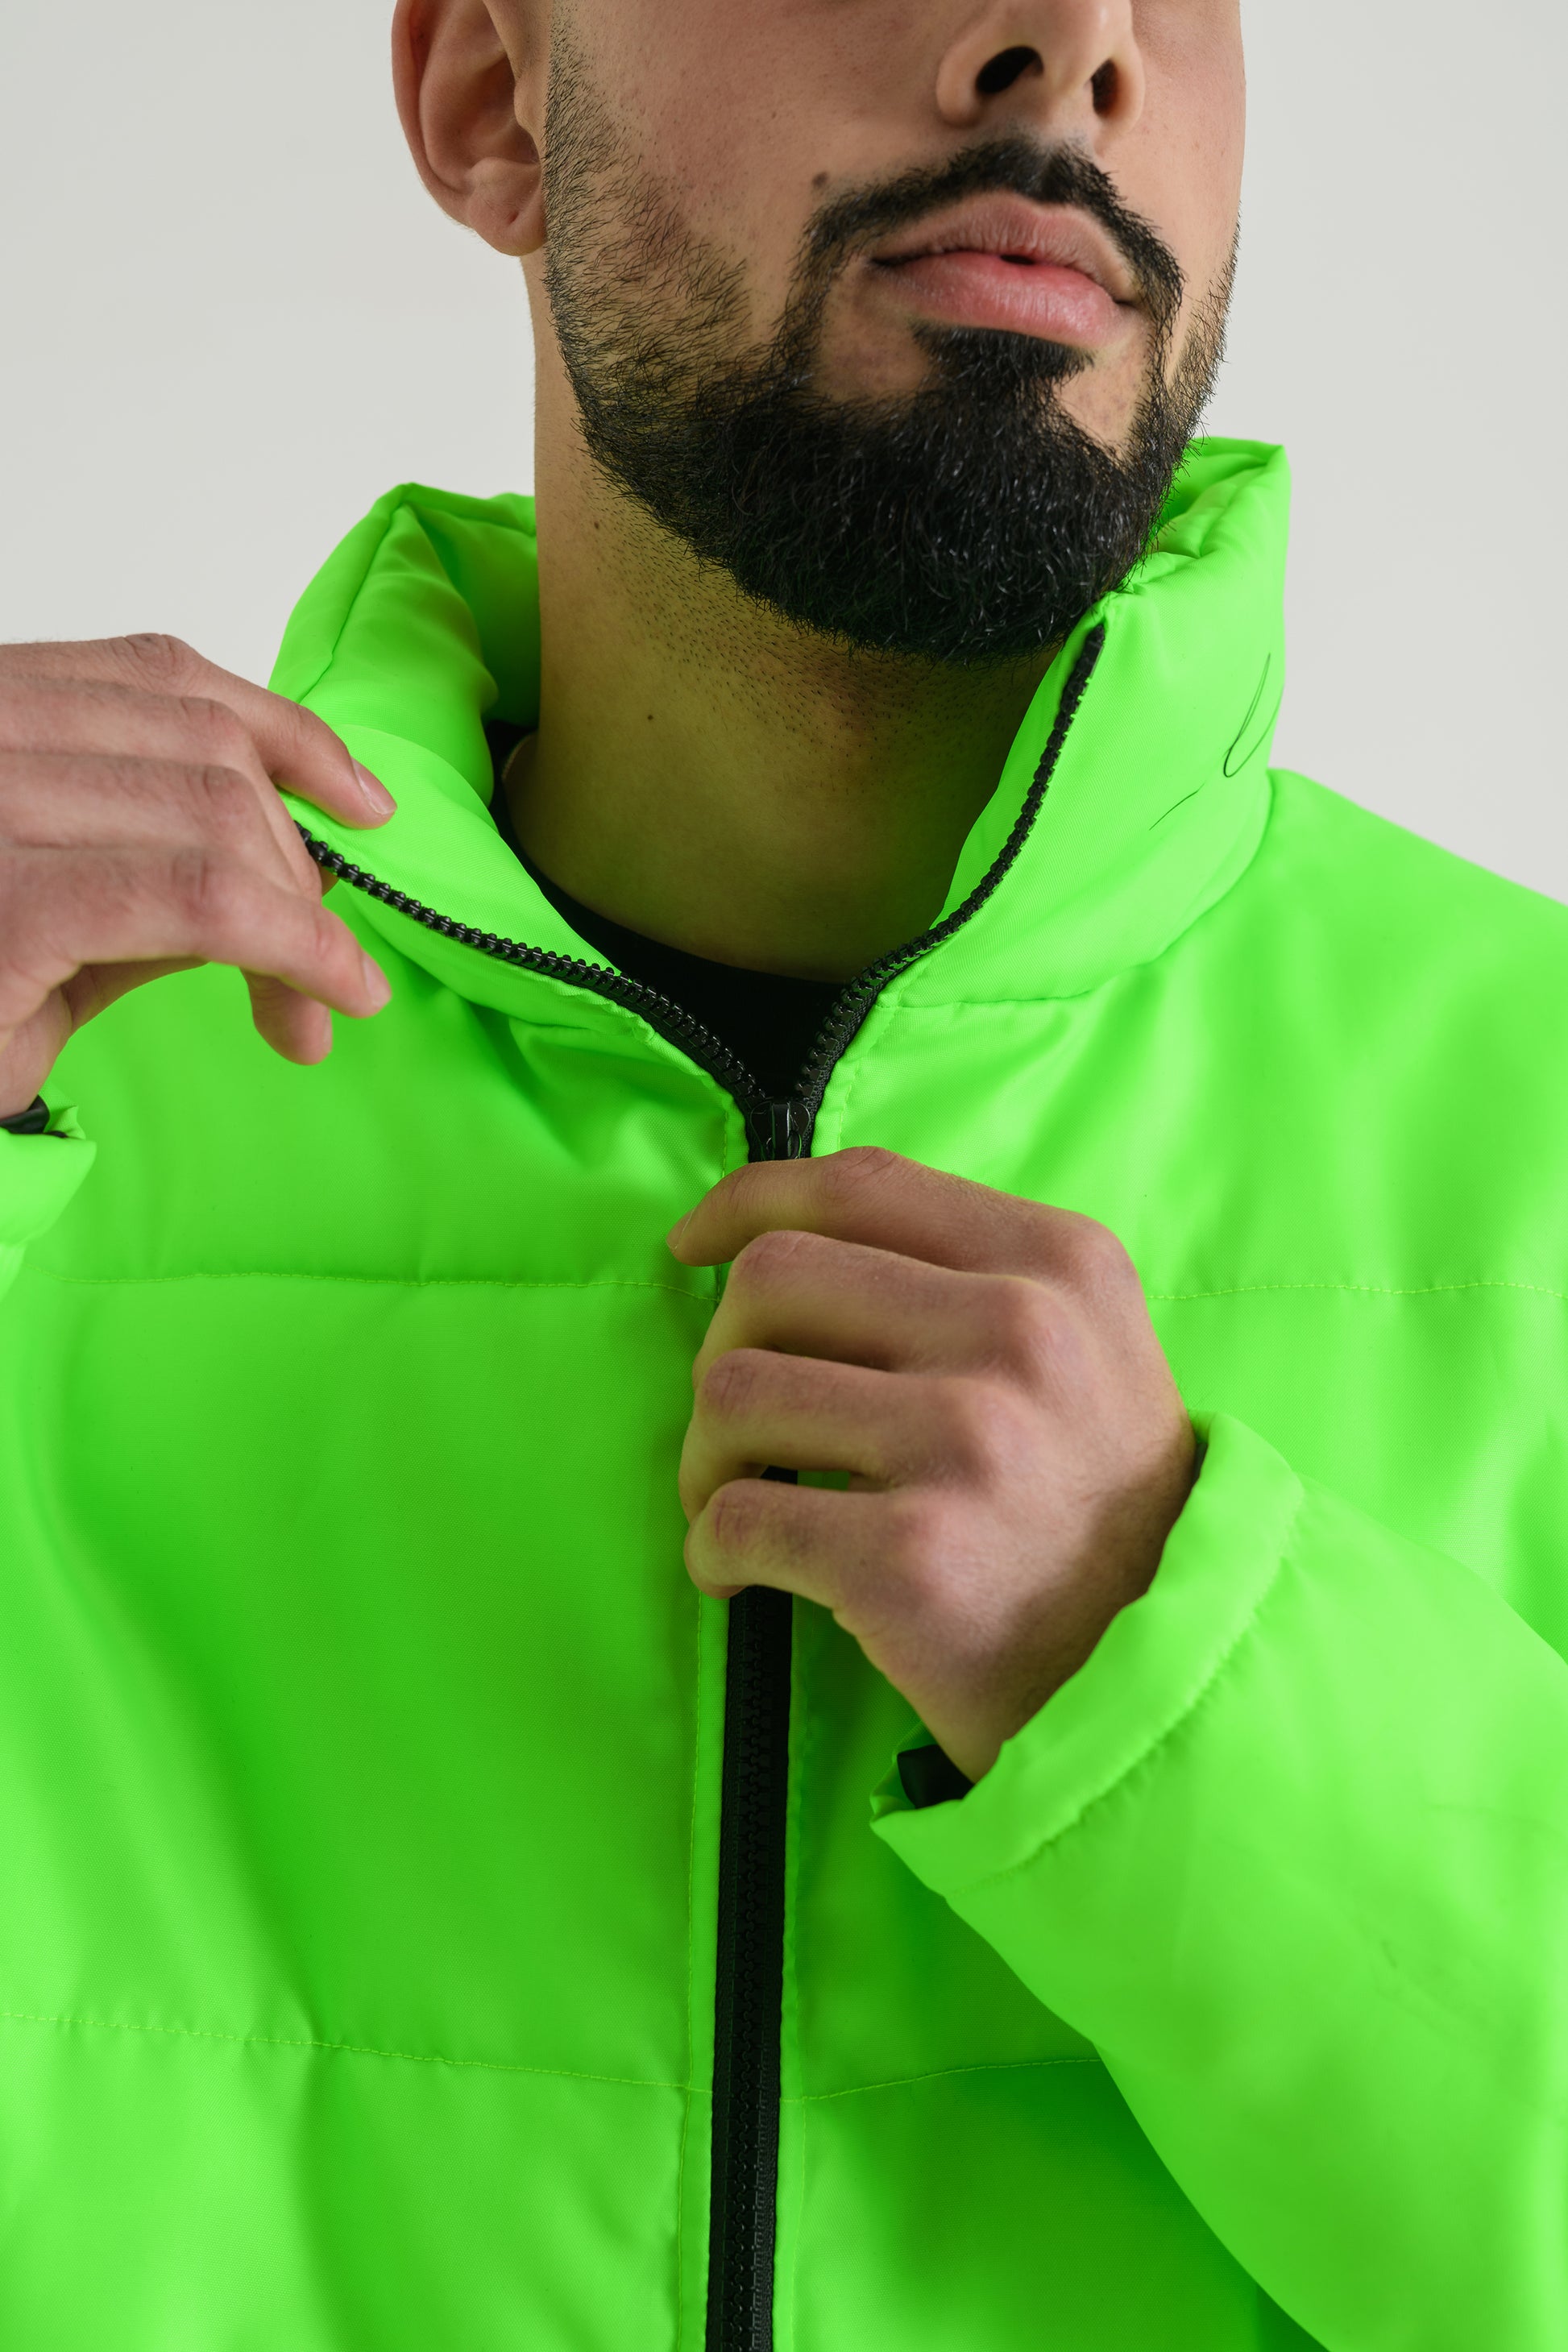 fhash green puffer jacket Lørd